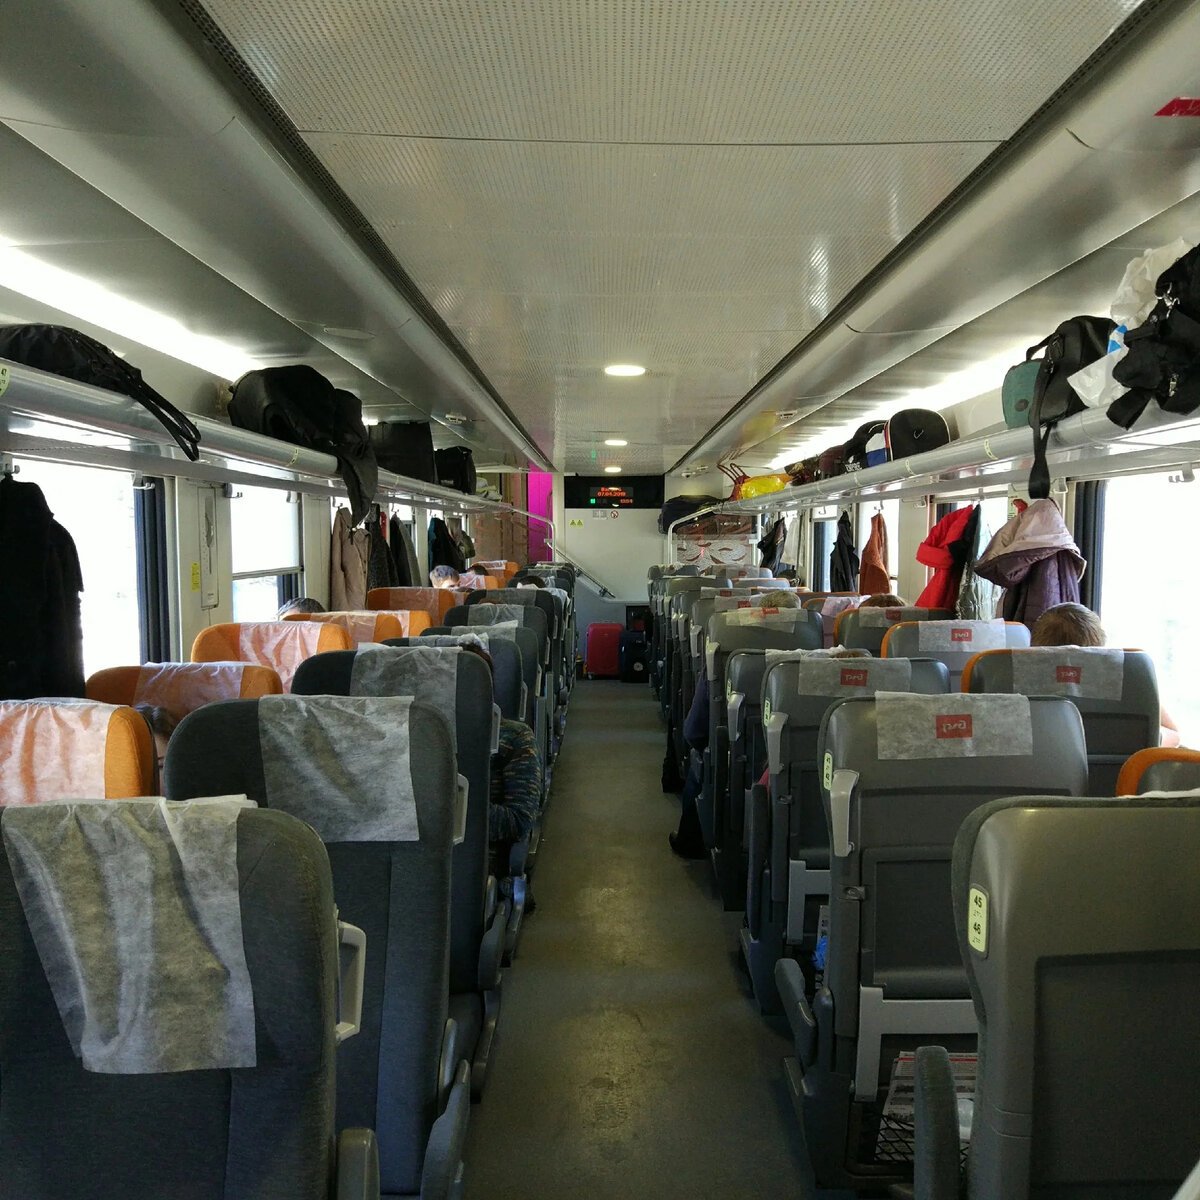 поезд 145 у сидячий вагон фото